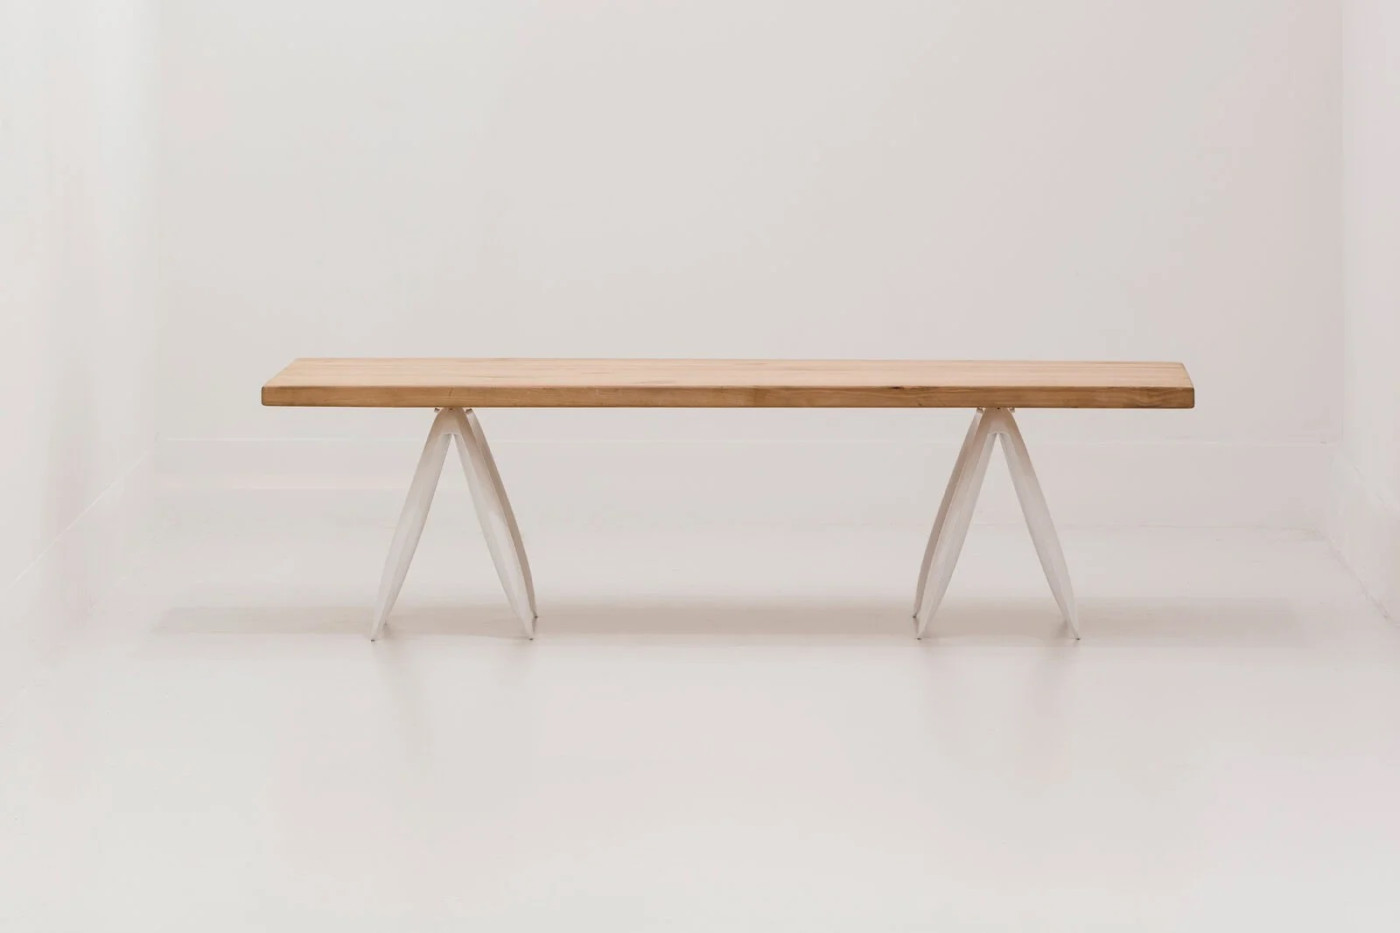 Kozka Table Constructions - Zieta Studio